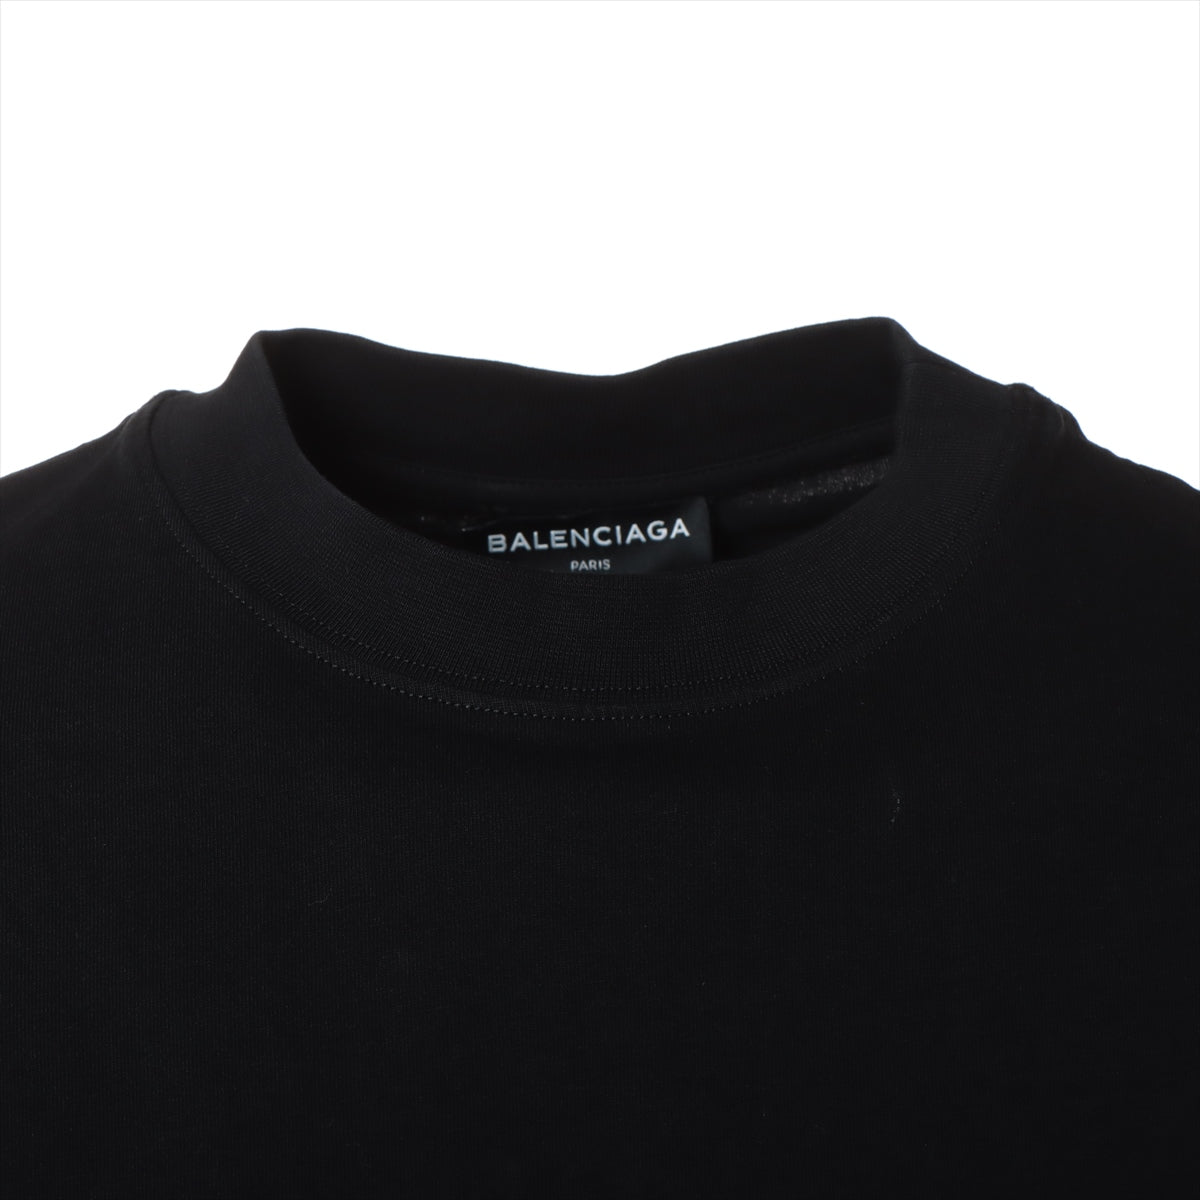 バレンシアガ 18SS コットン Tシャツ S メンズ ブラック  485978 スモールロゴ